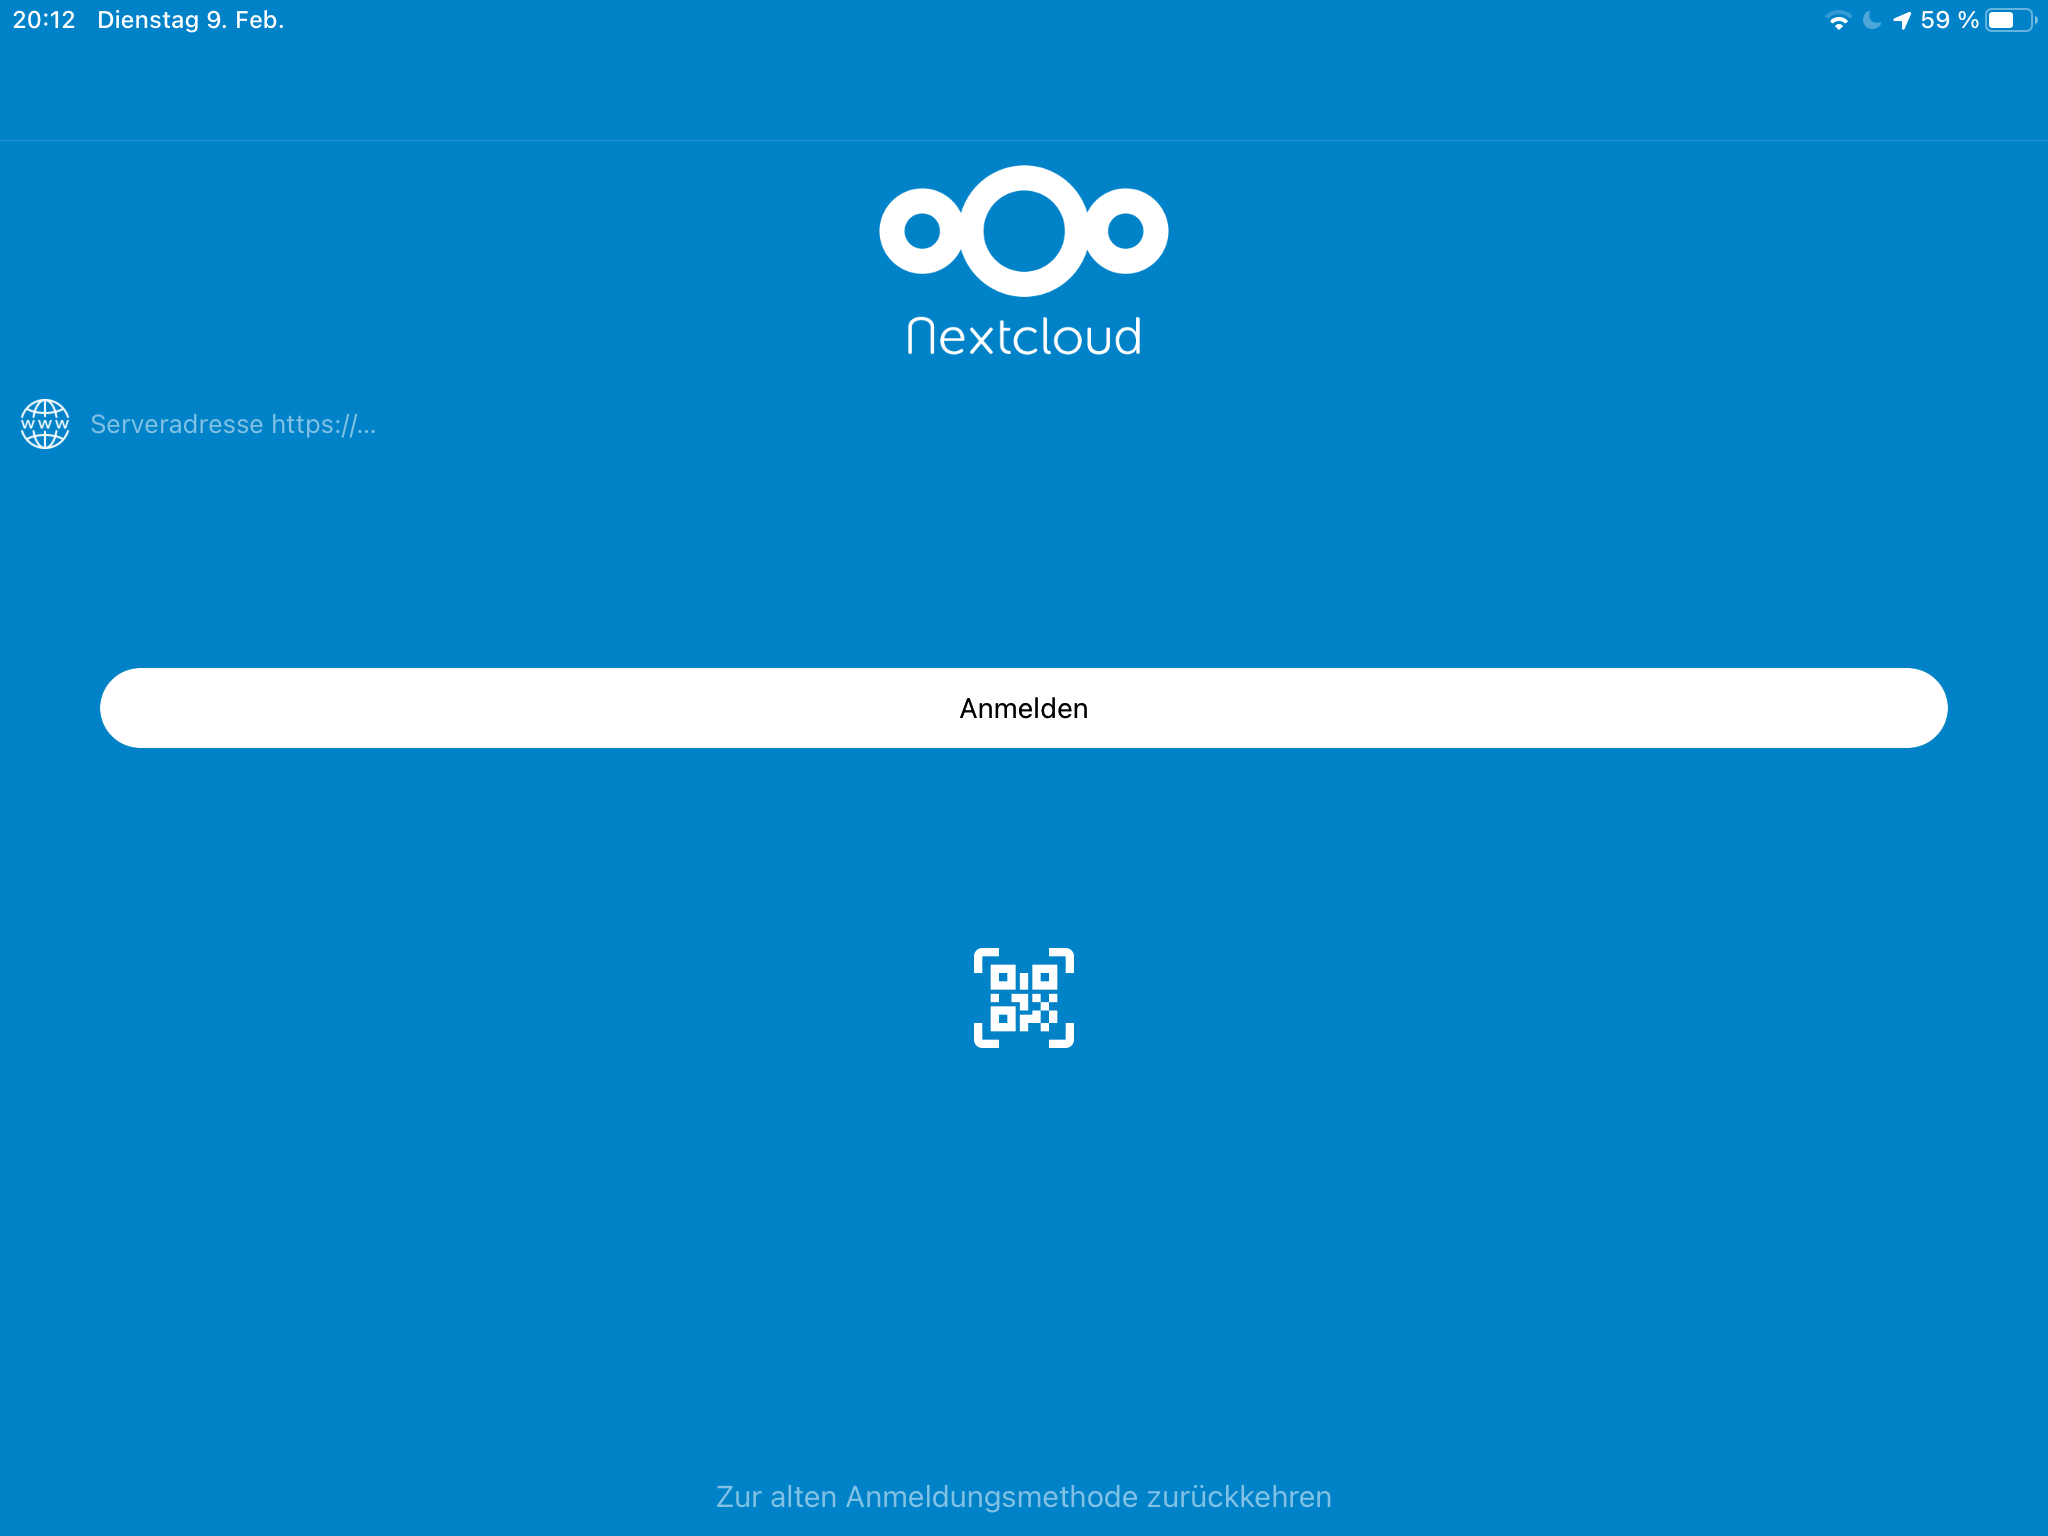 ucloud4schools - Anmeldung App - NextCloud - Schritt 1 Startbildschirm